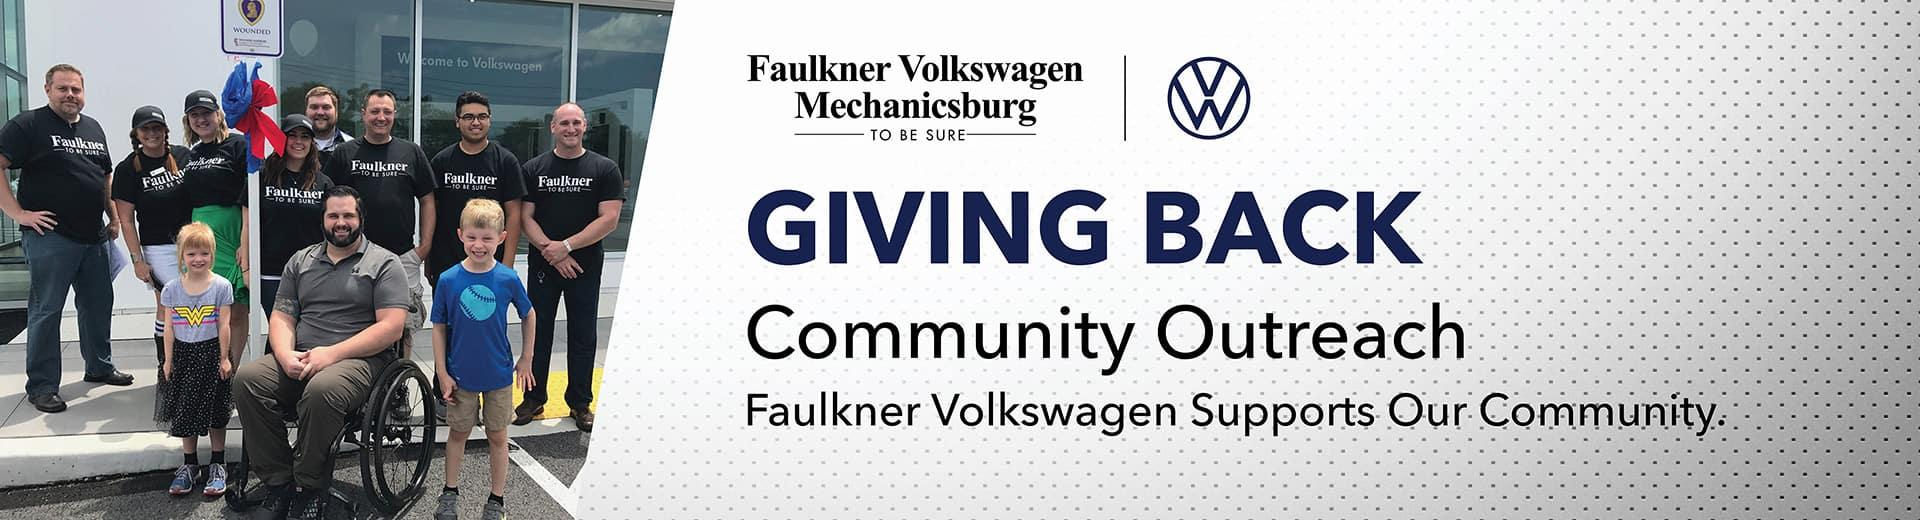 Faulkner Volkswagen Mechanicsburg Mechanicsburg PA